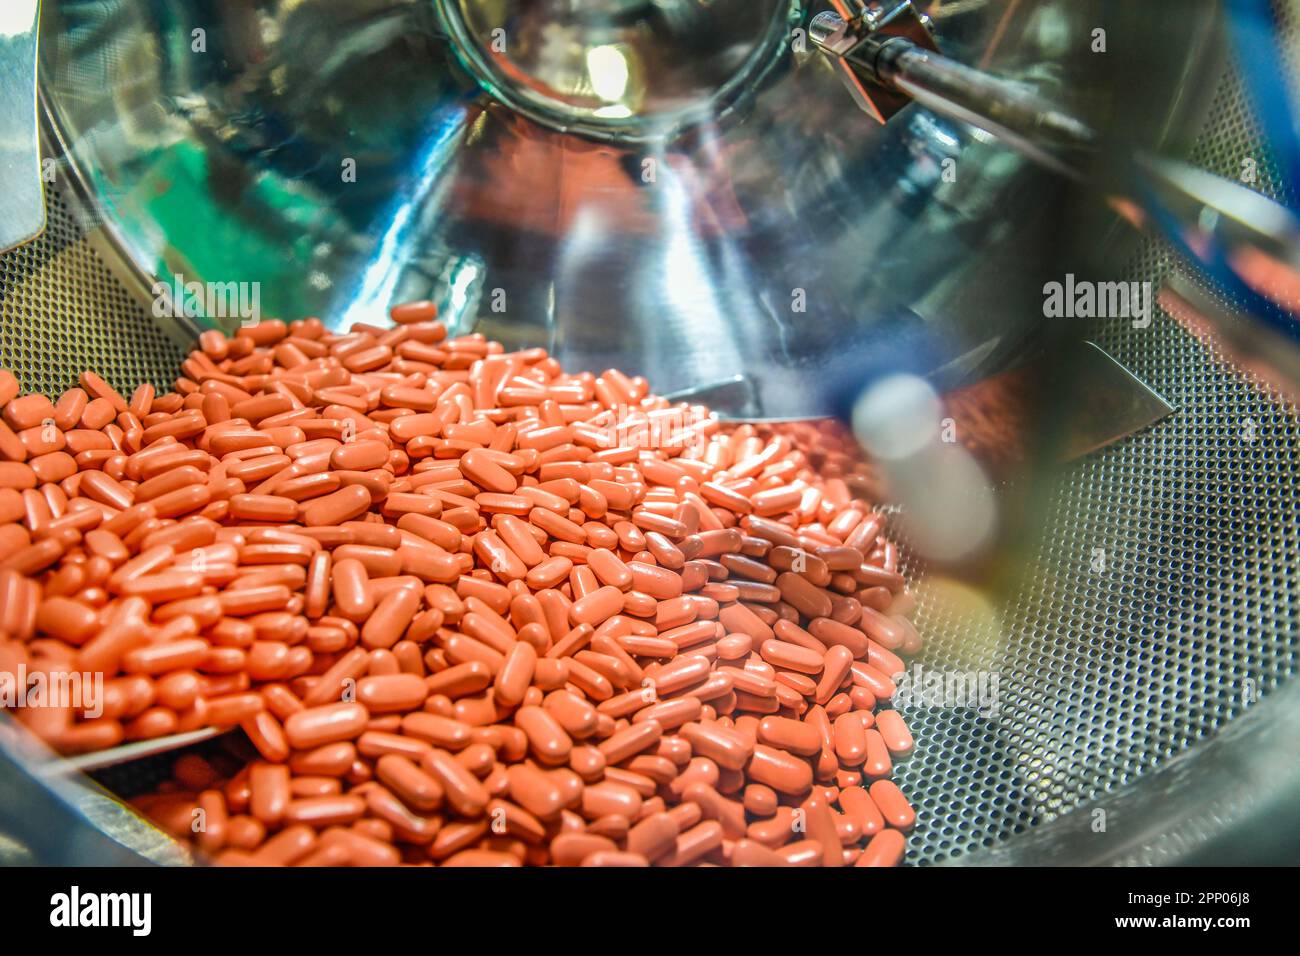 Capsule medicine pills linea automatica in fabbrica farmaceutica, i farmaci si muovono con l'uso di apparecchiature rotanti in officina di impianti chimici. Foto Stock